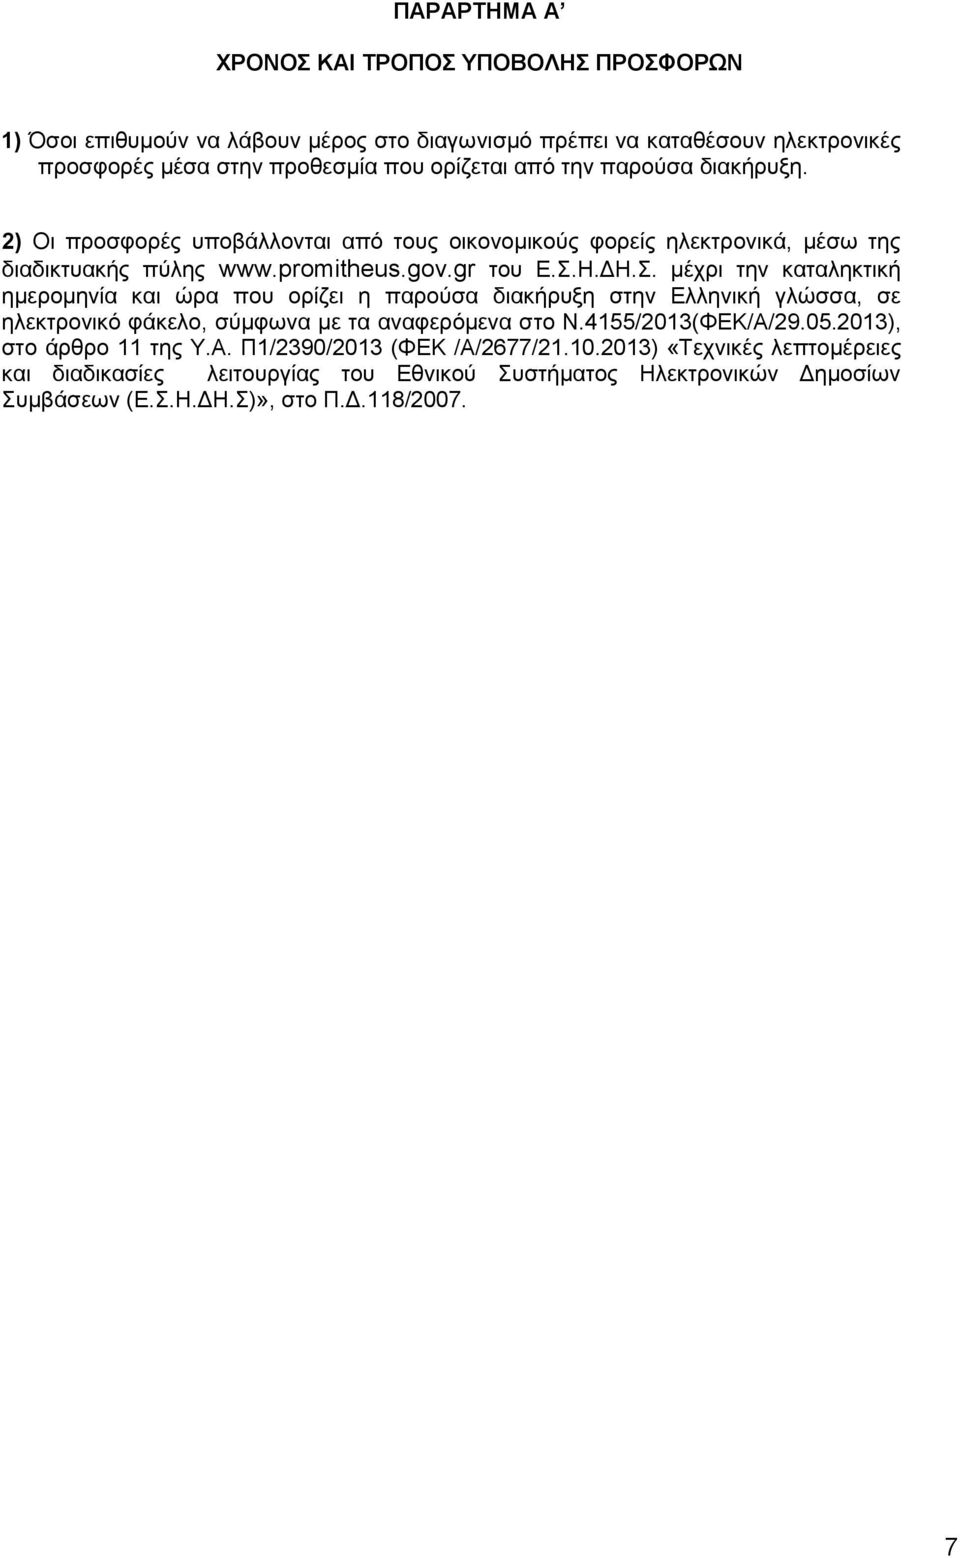 Η.ΔΗ.Σ. μέχρι την καταληκτική ημερομηνία και ώρα που ορίζει η παρούσα διακήρυξη στην Ελληνική γλώσσα, σε ηλεκτρονικό φάκελο, σύμφωνα με τα αναφερόμενα στο Ν.4155/2013(ΦΕΚ/Α/29.05.